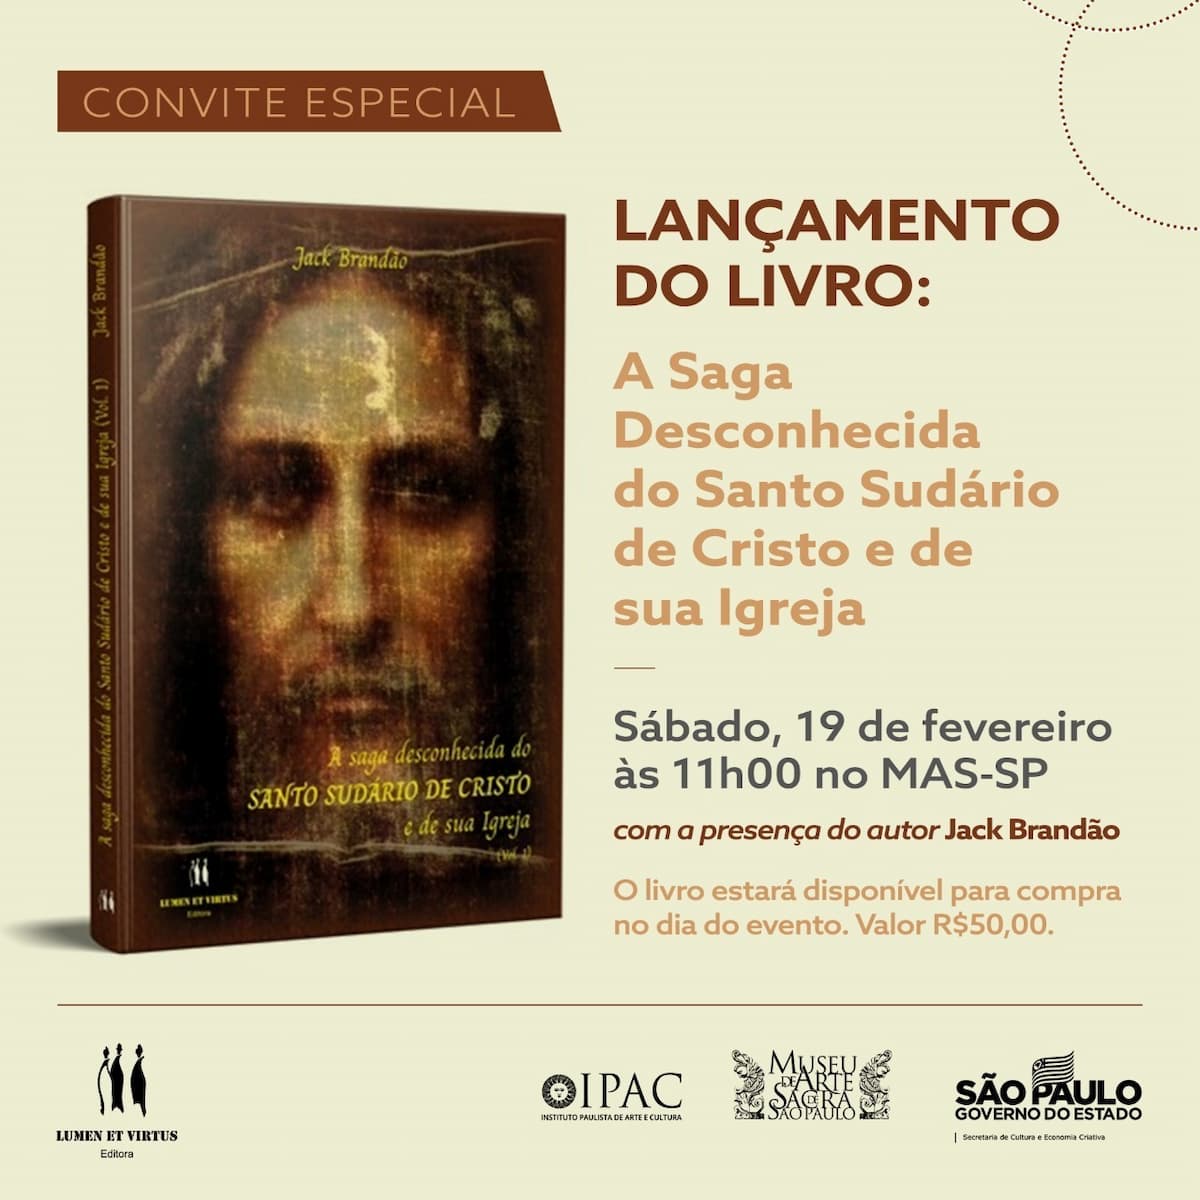 Livro "A saga desconhecida do SUDÁRIO DE CRISTO e de sua Igreja", Buch - Abdeckung, Einladung. Bekanntgabe.